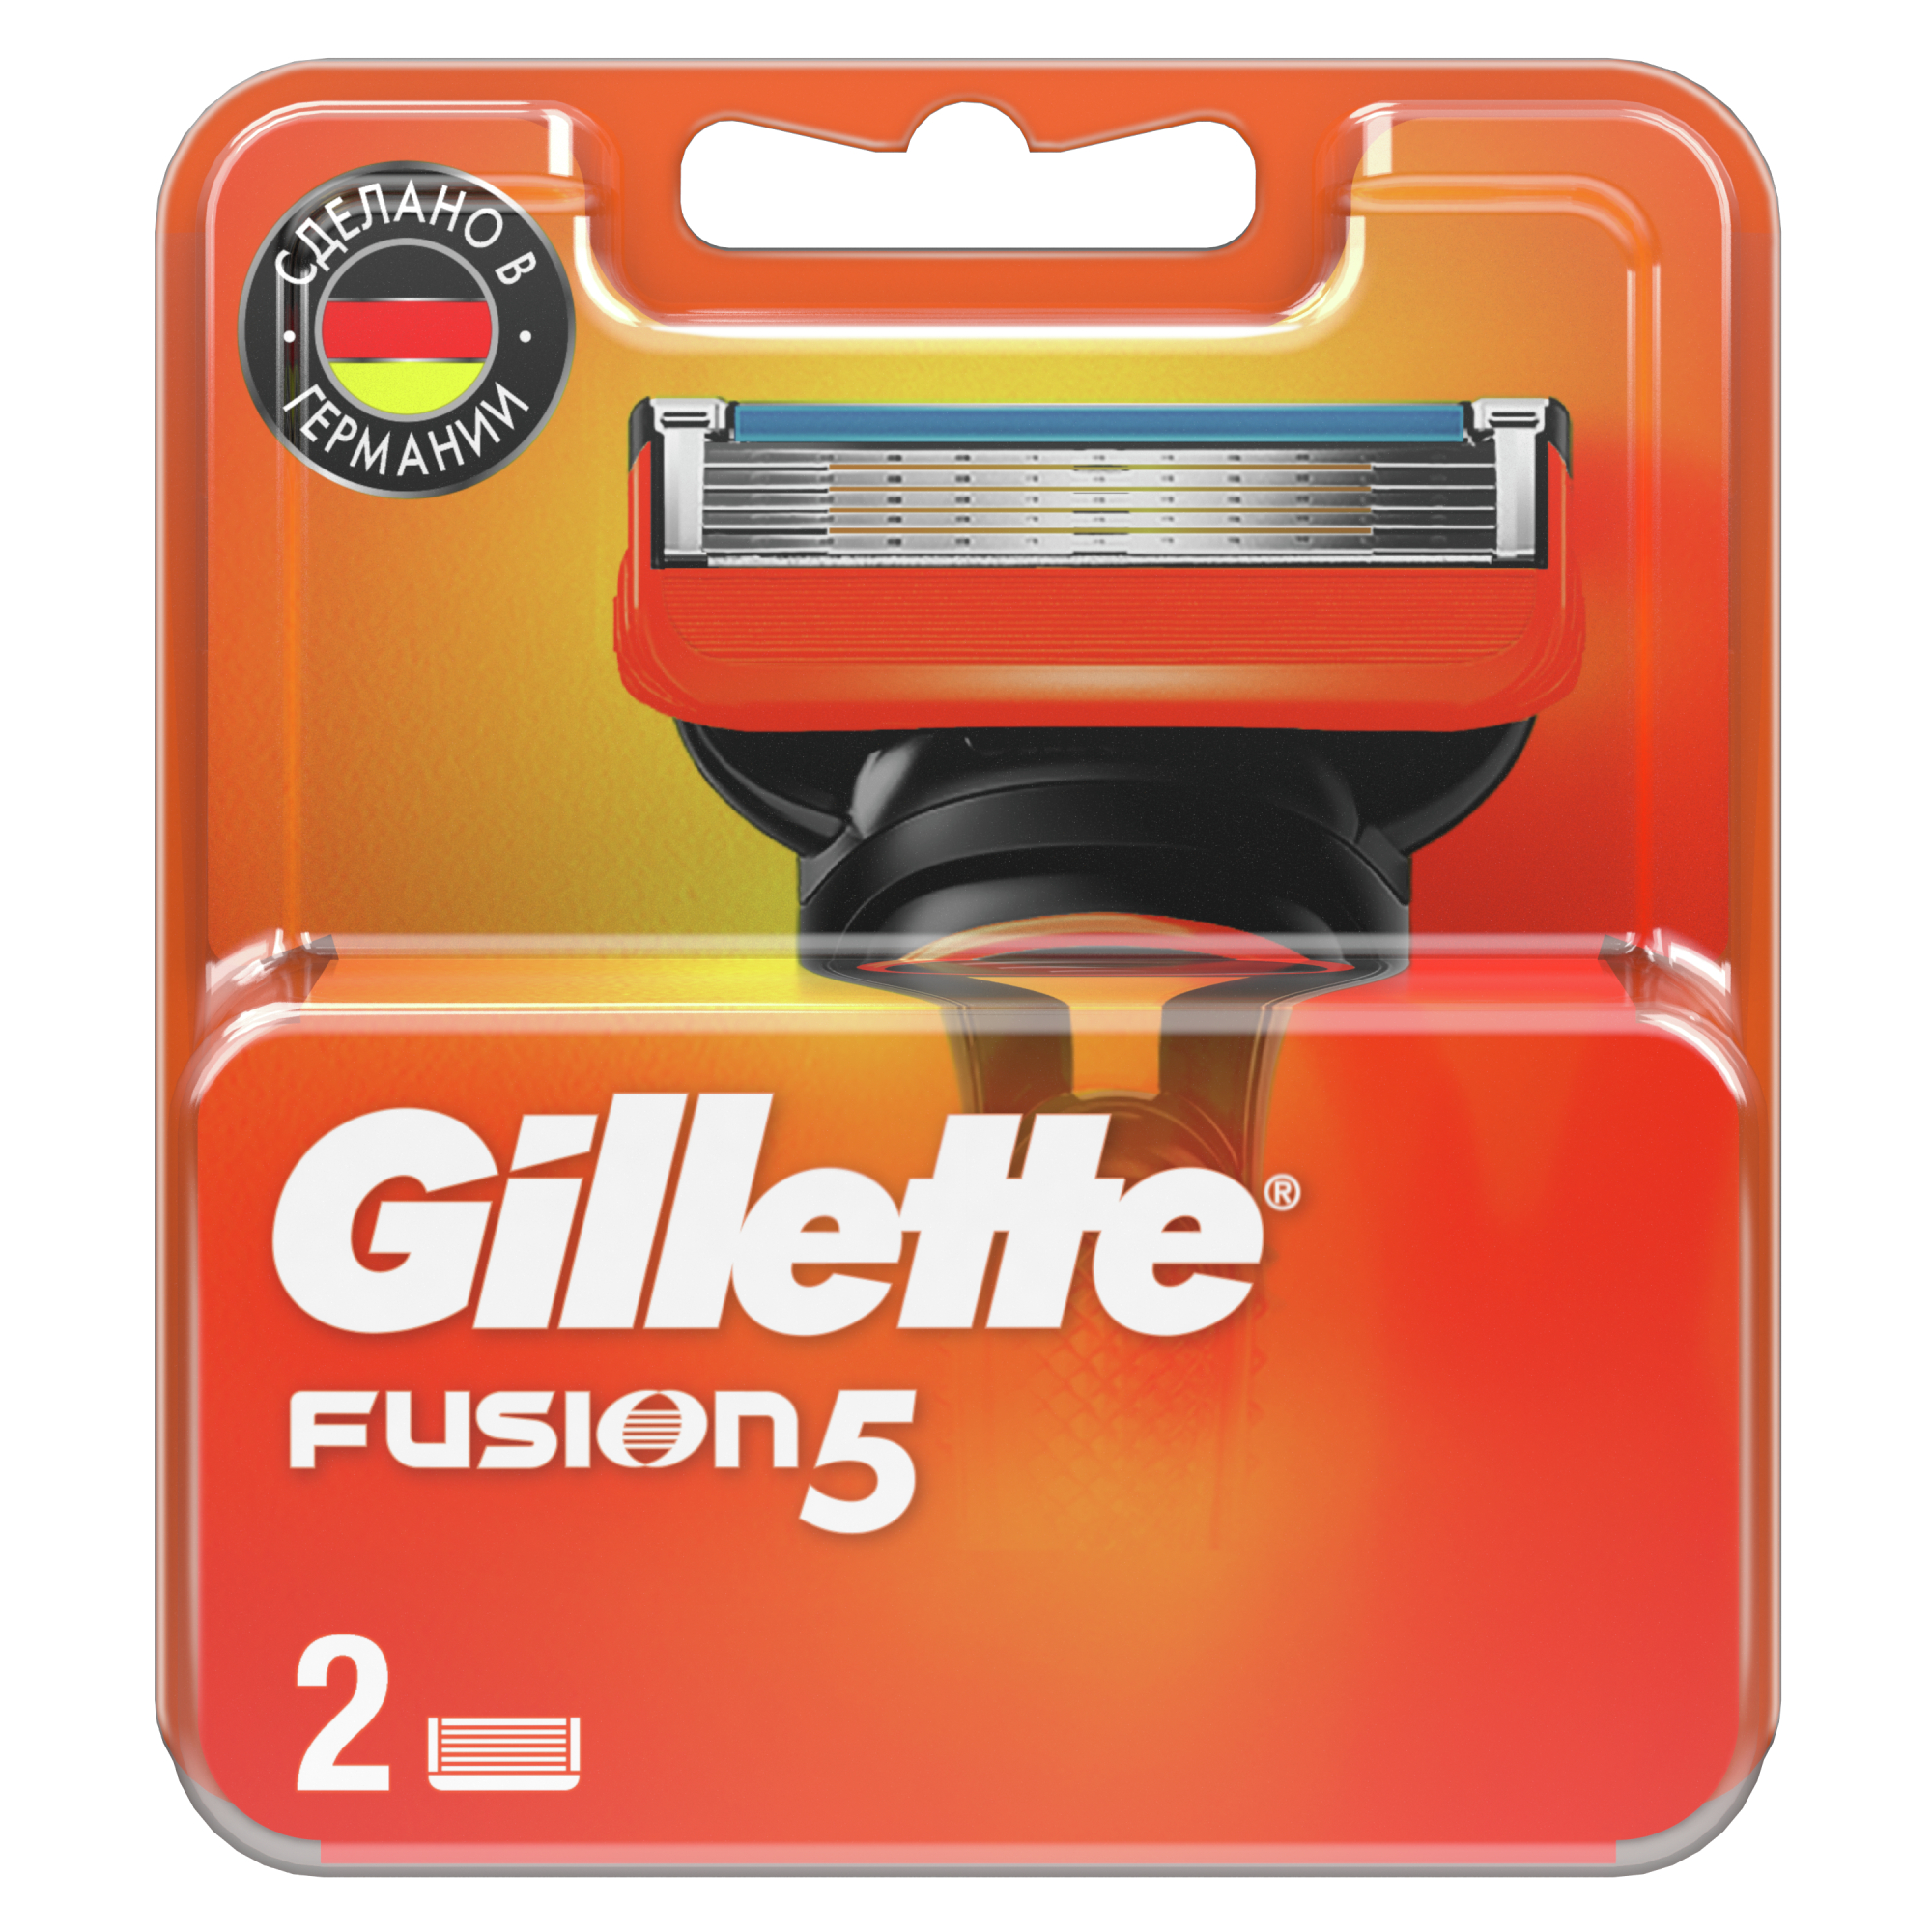 Сменные кассеты Gillette Fusion5 для мужской бритвы, 2 шт, с 5 лезвиями, c точным триммером для труднодоступных мест сменная кассета gillette fusion 4 шт